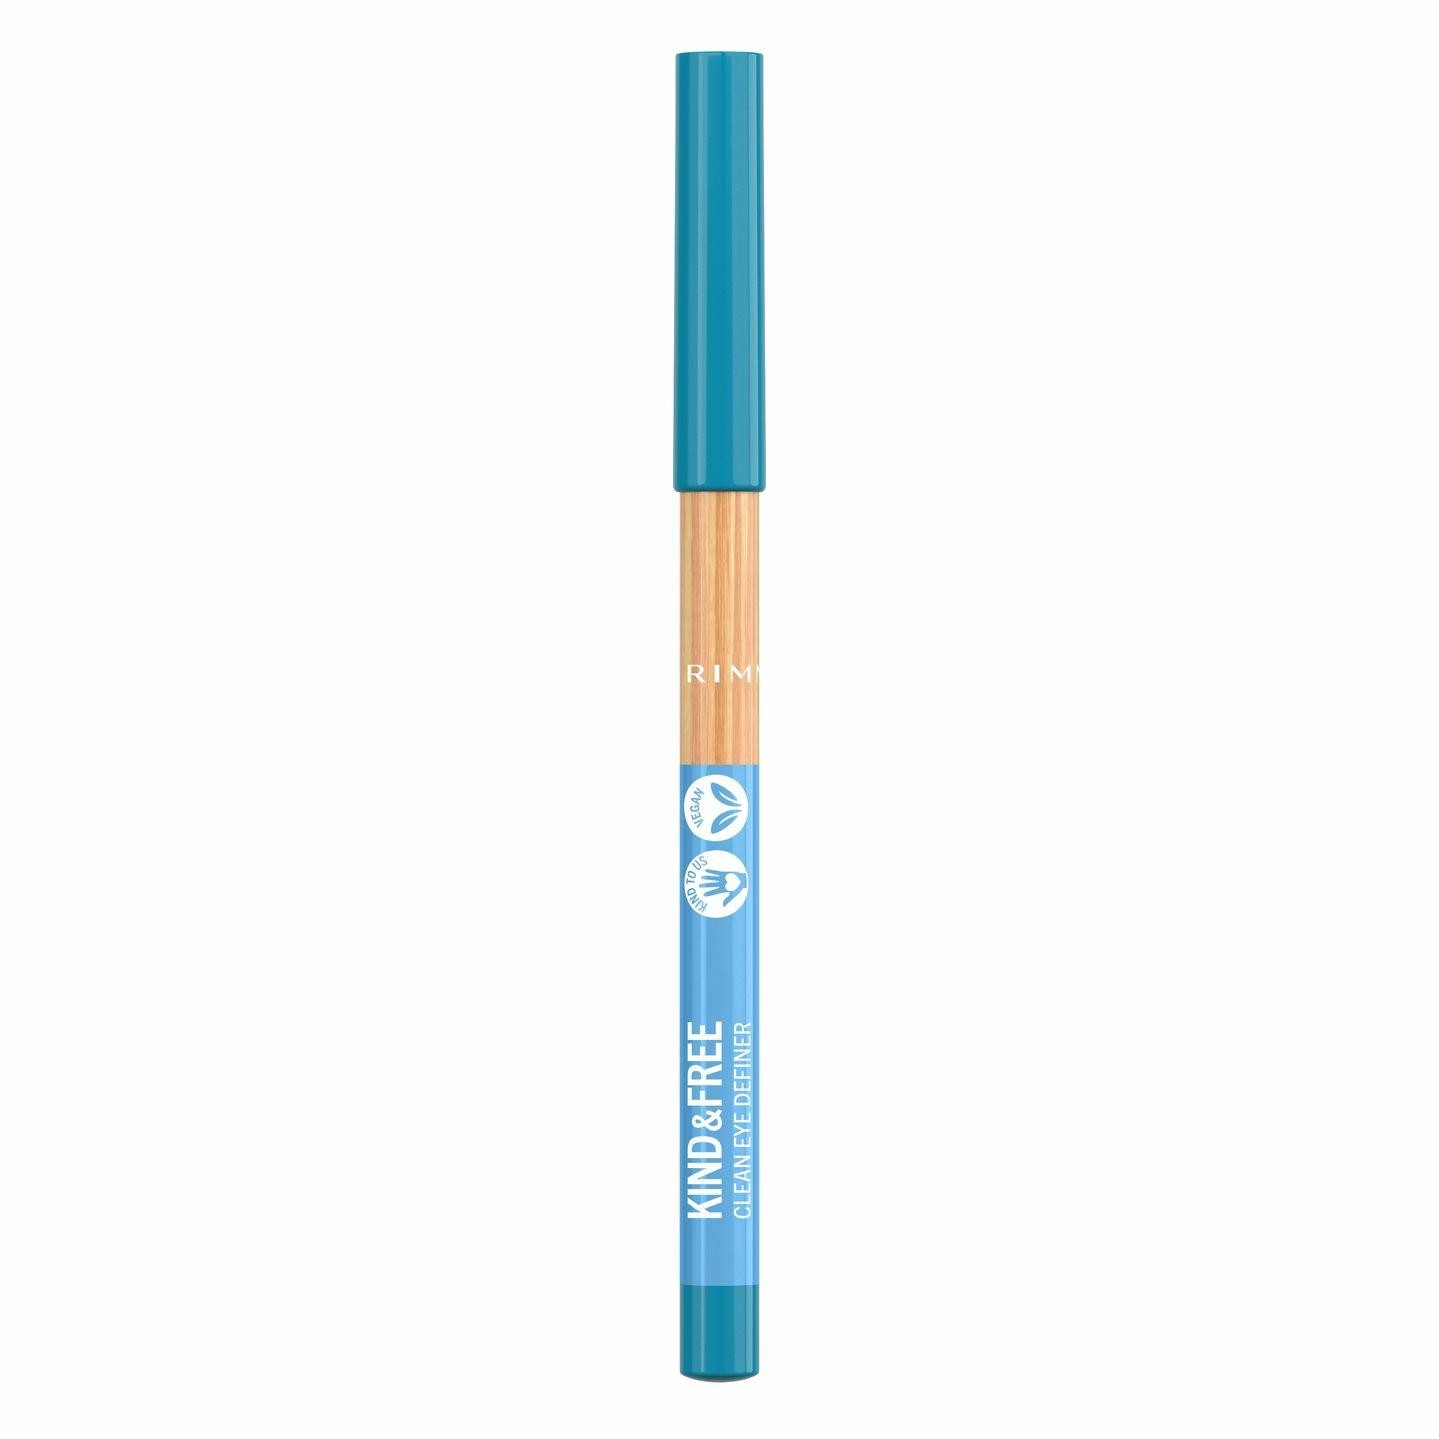 Rimmel Kind & Free Clean Eye Definer eye pencil Crema 06 Anime Blue